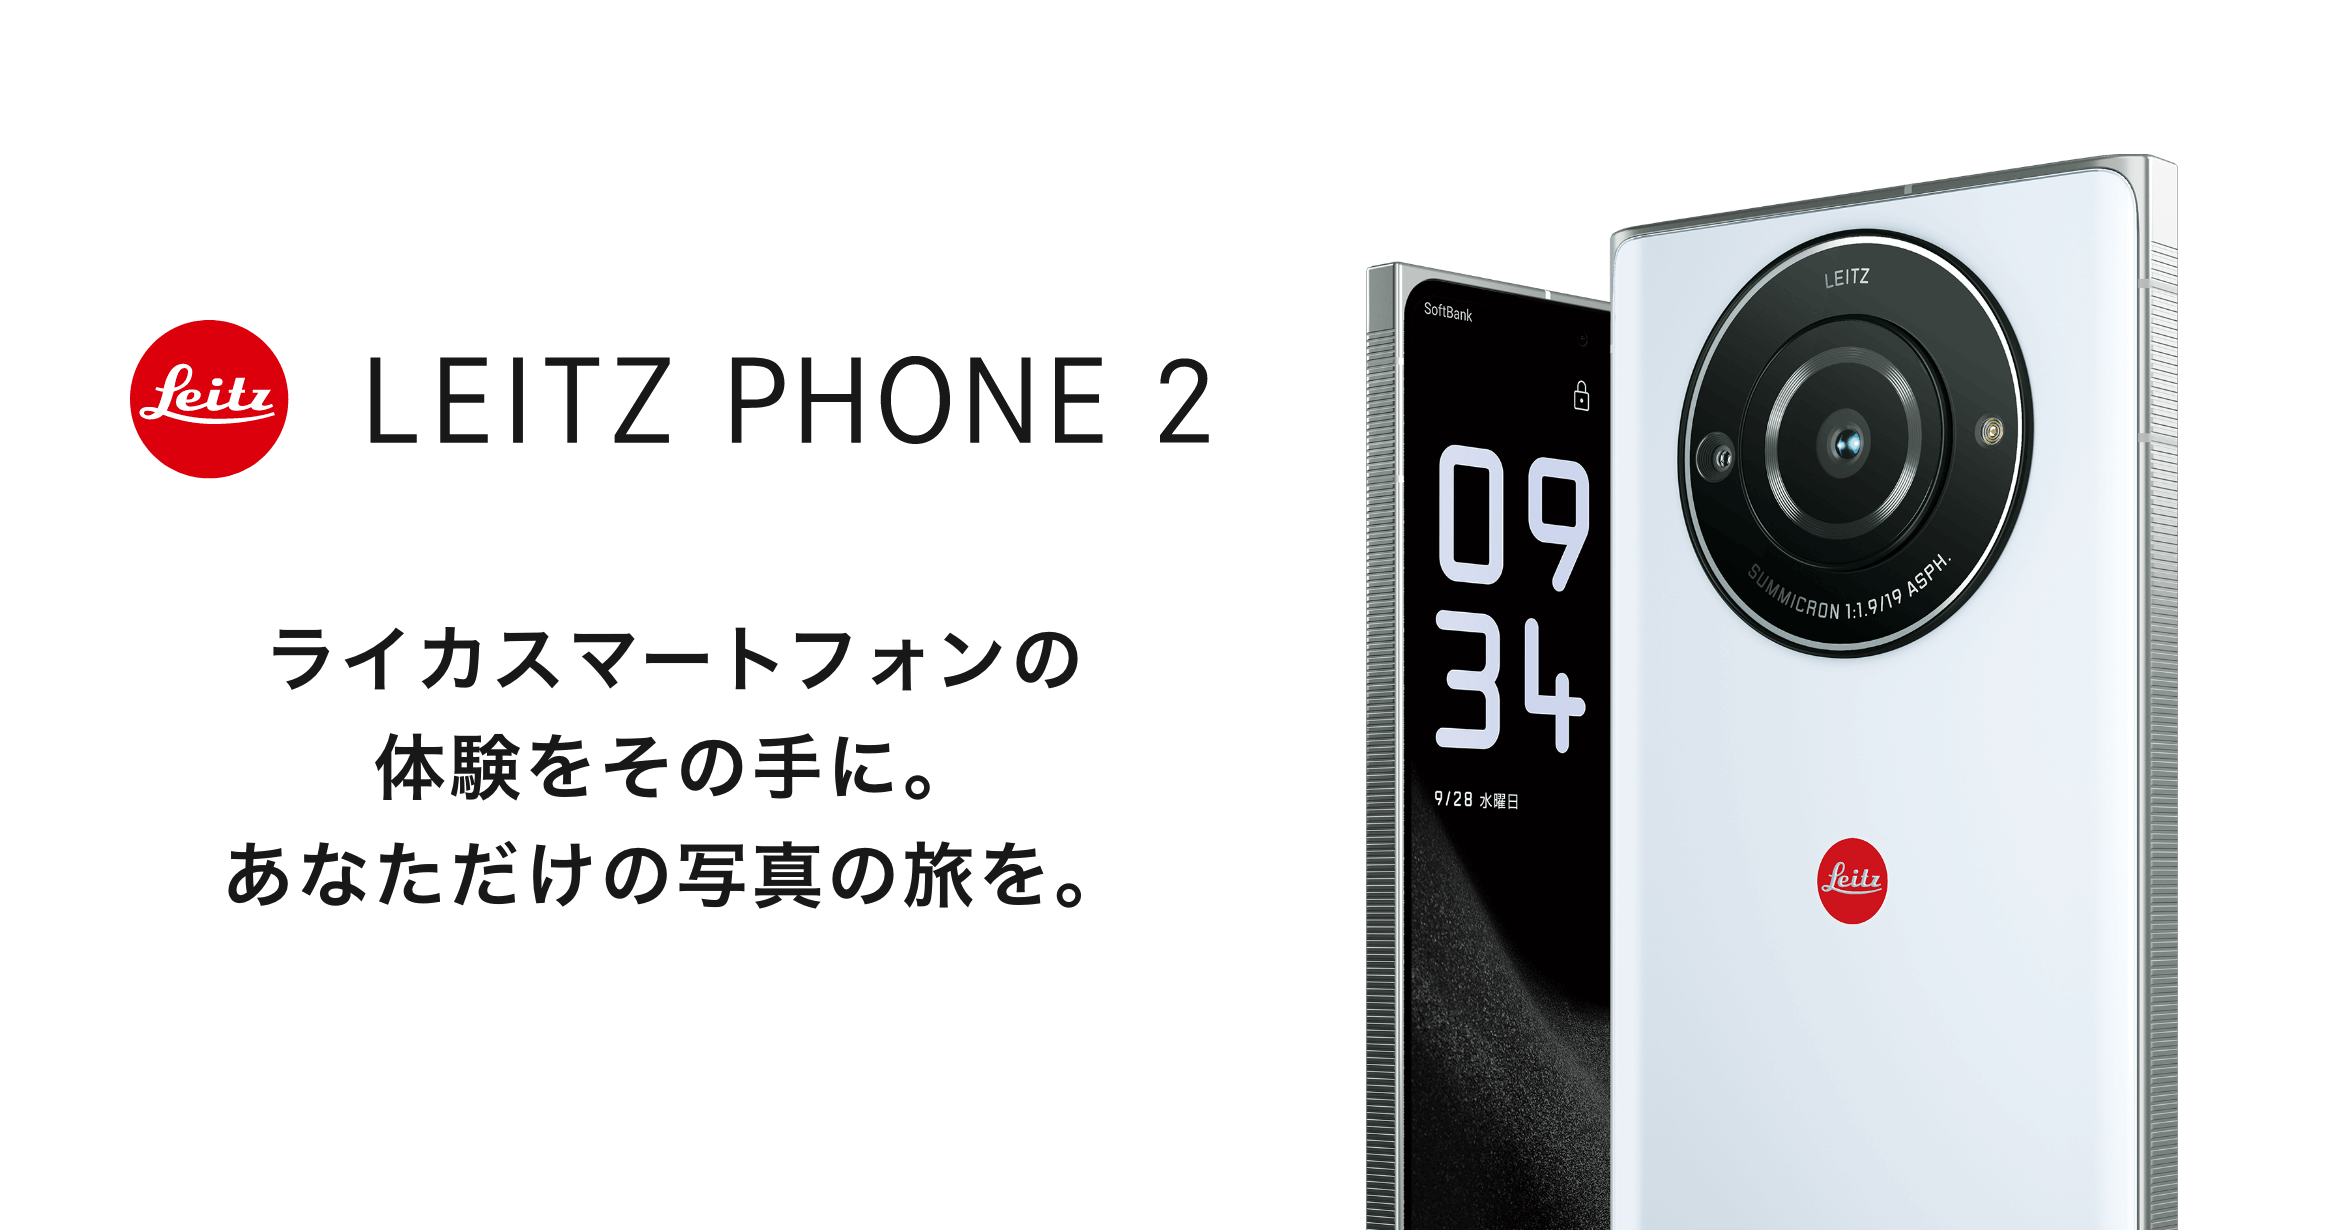 LEITZ PHONE 2 ライカスマートフォンの体験をその手に。あなただけの写真の旅を。